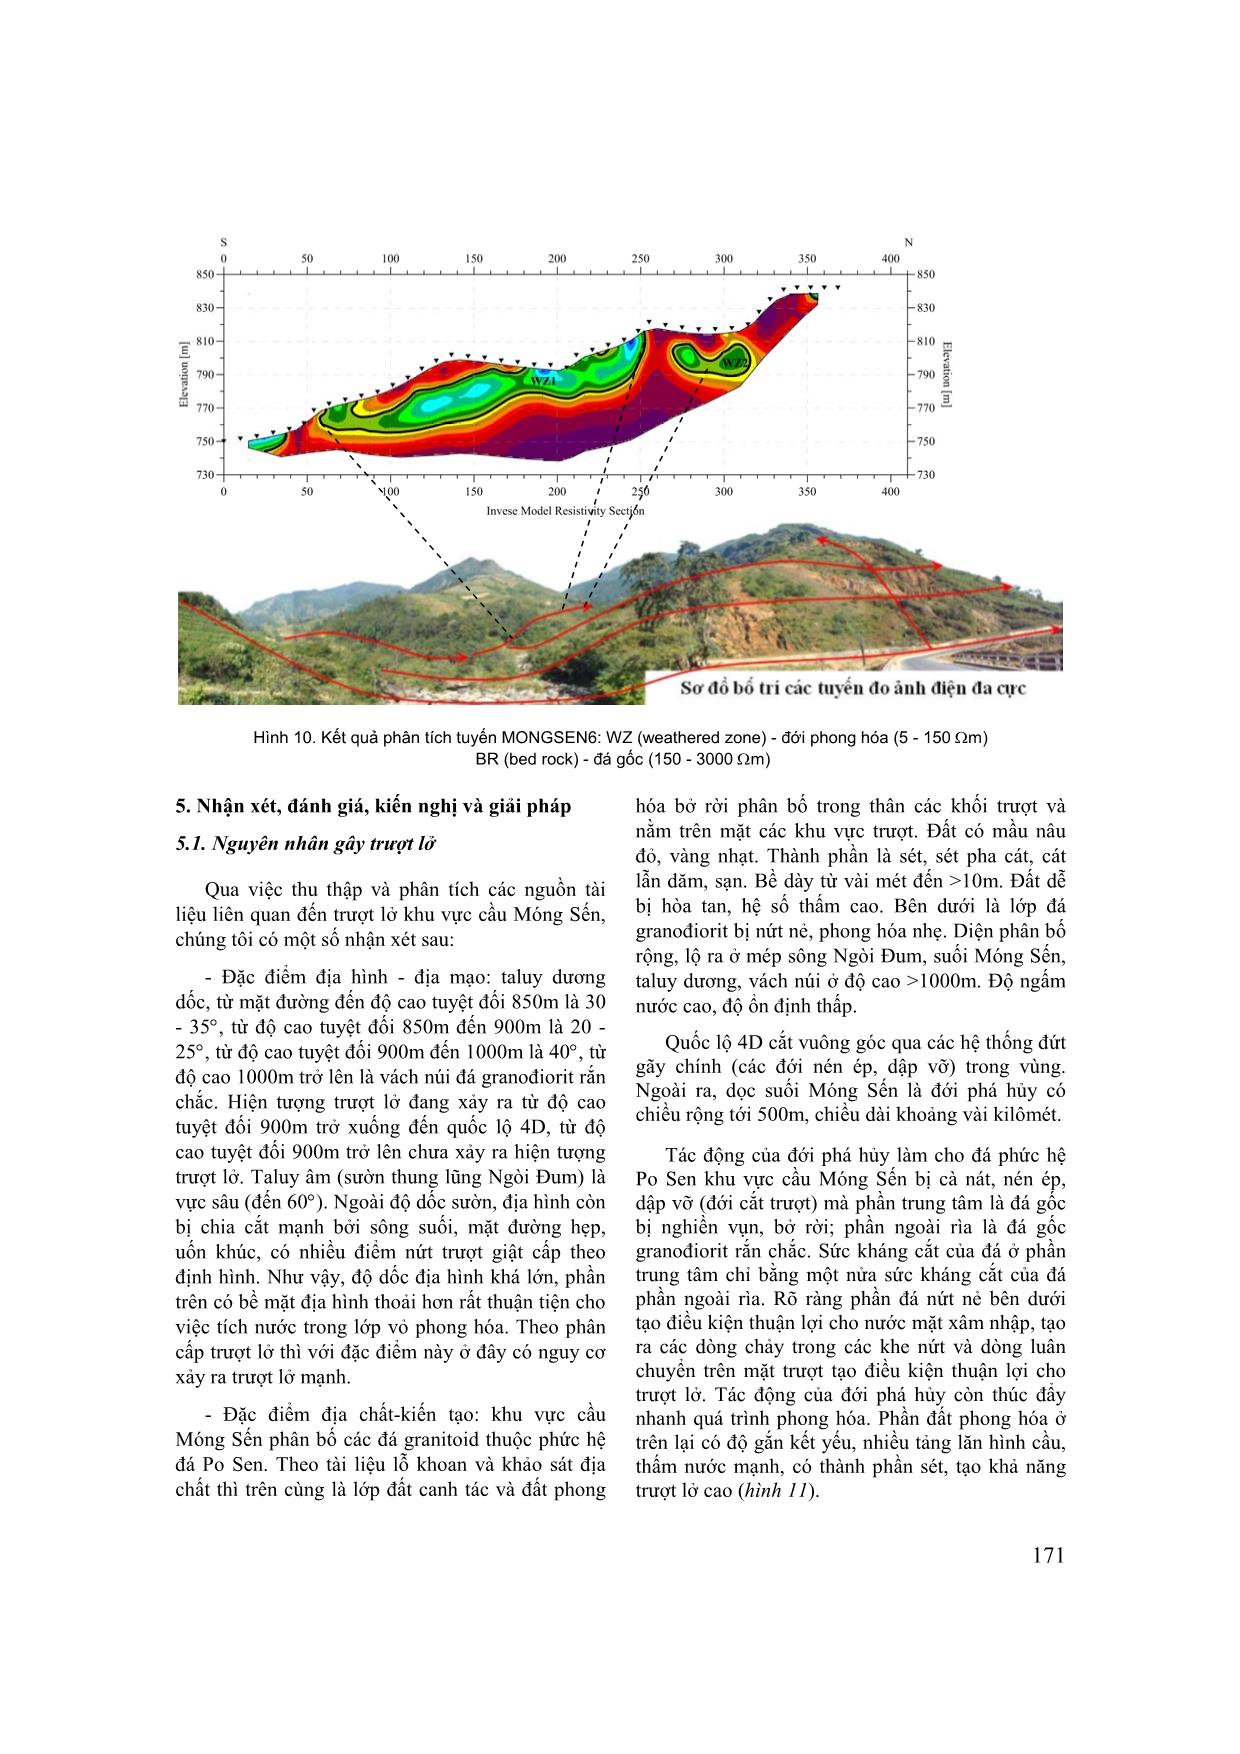 Nghiên cứu xác định nguyên nhân trượt lở khu vực cầu Móng Sến, tỉnh Lào Cai trang 8